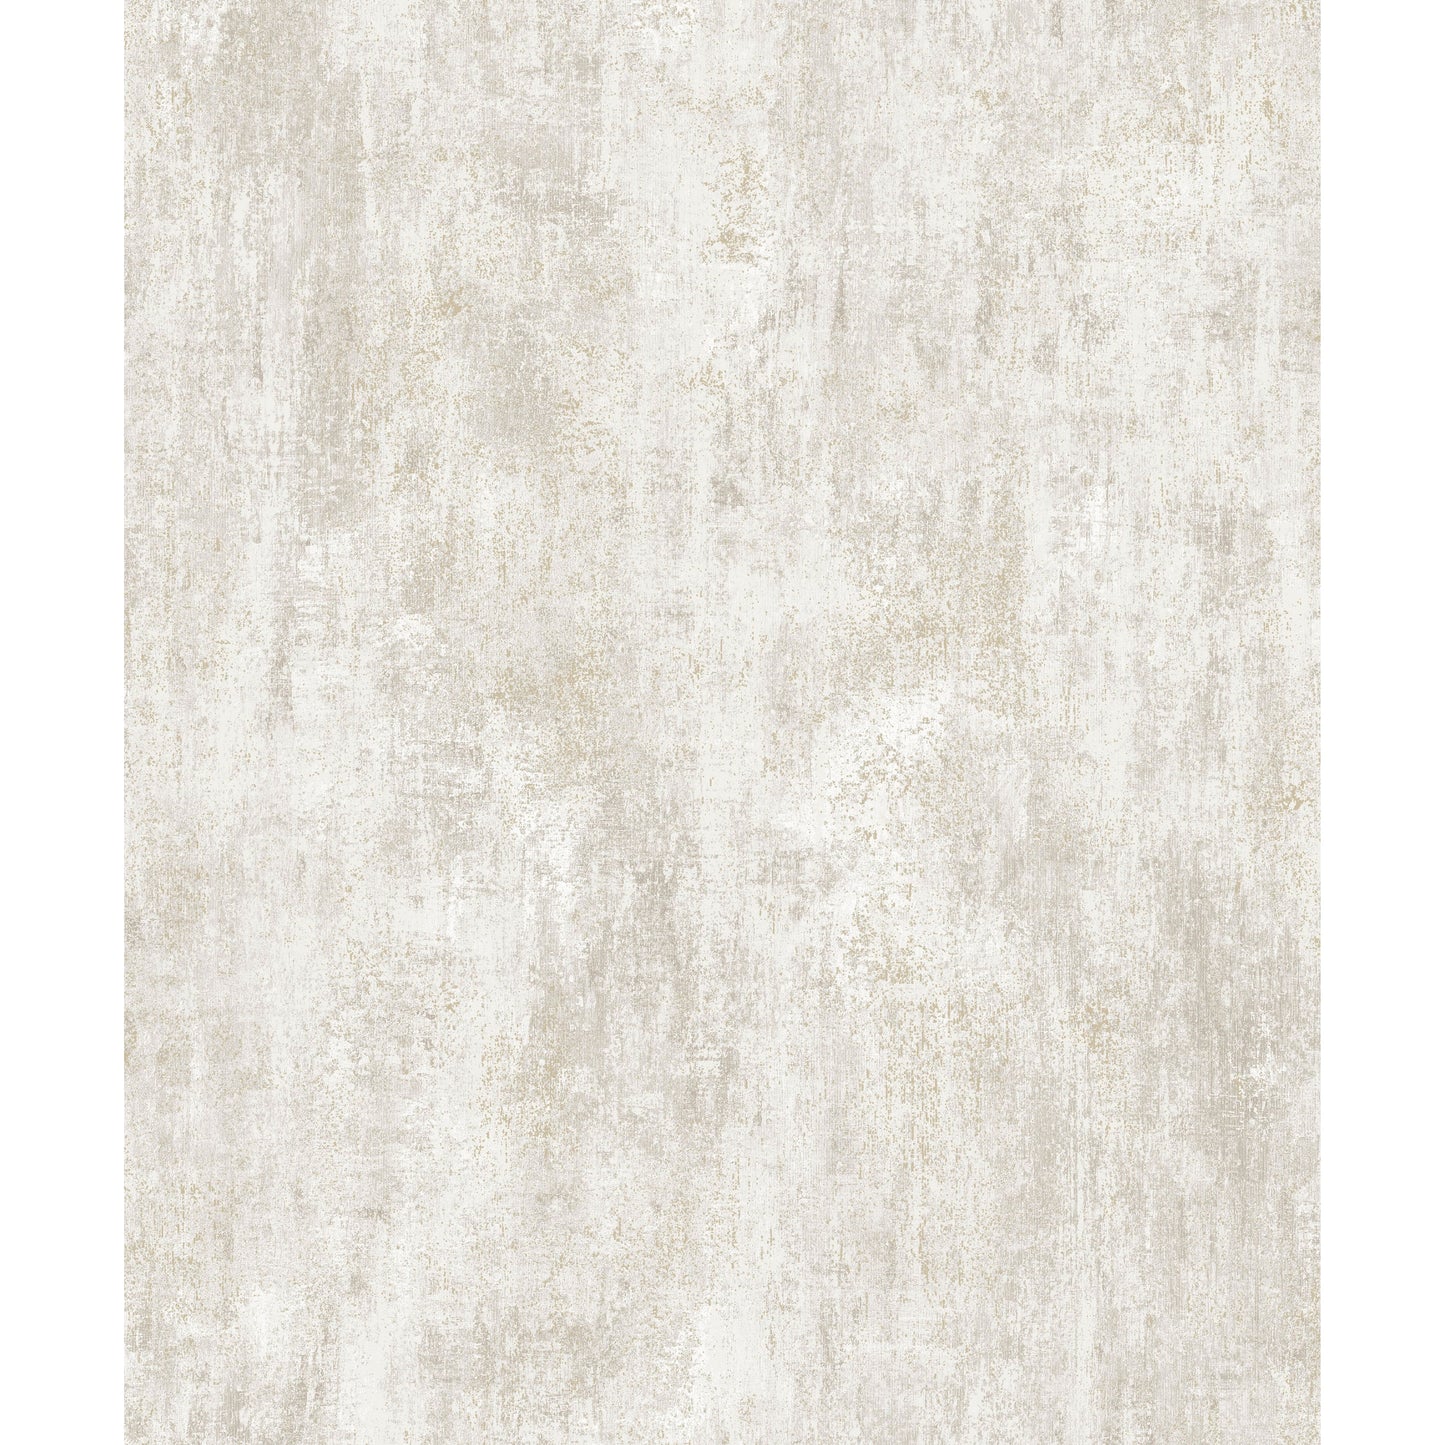 Muriva Phelan Texture Cream Wallpaper (209102)